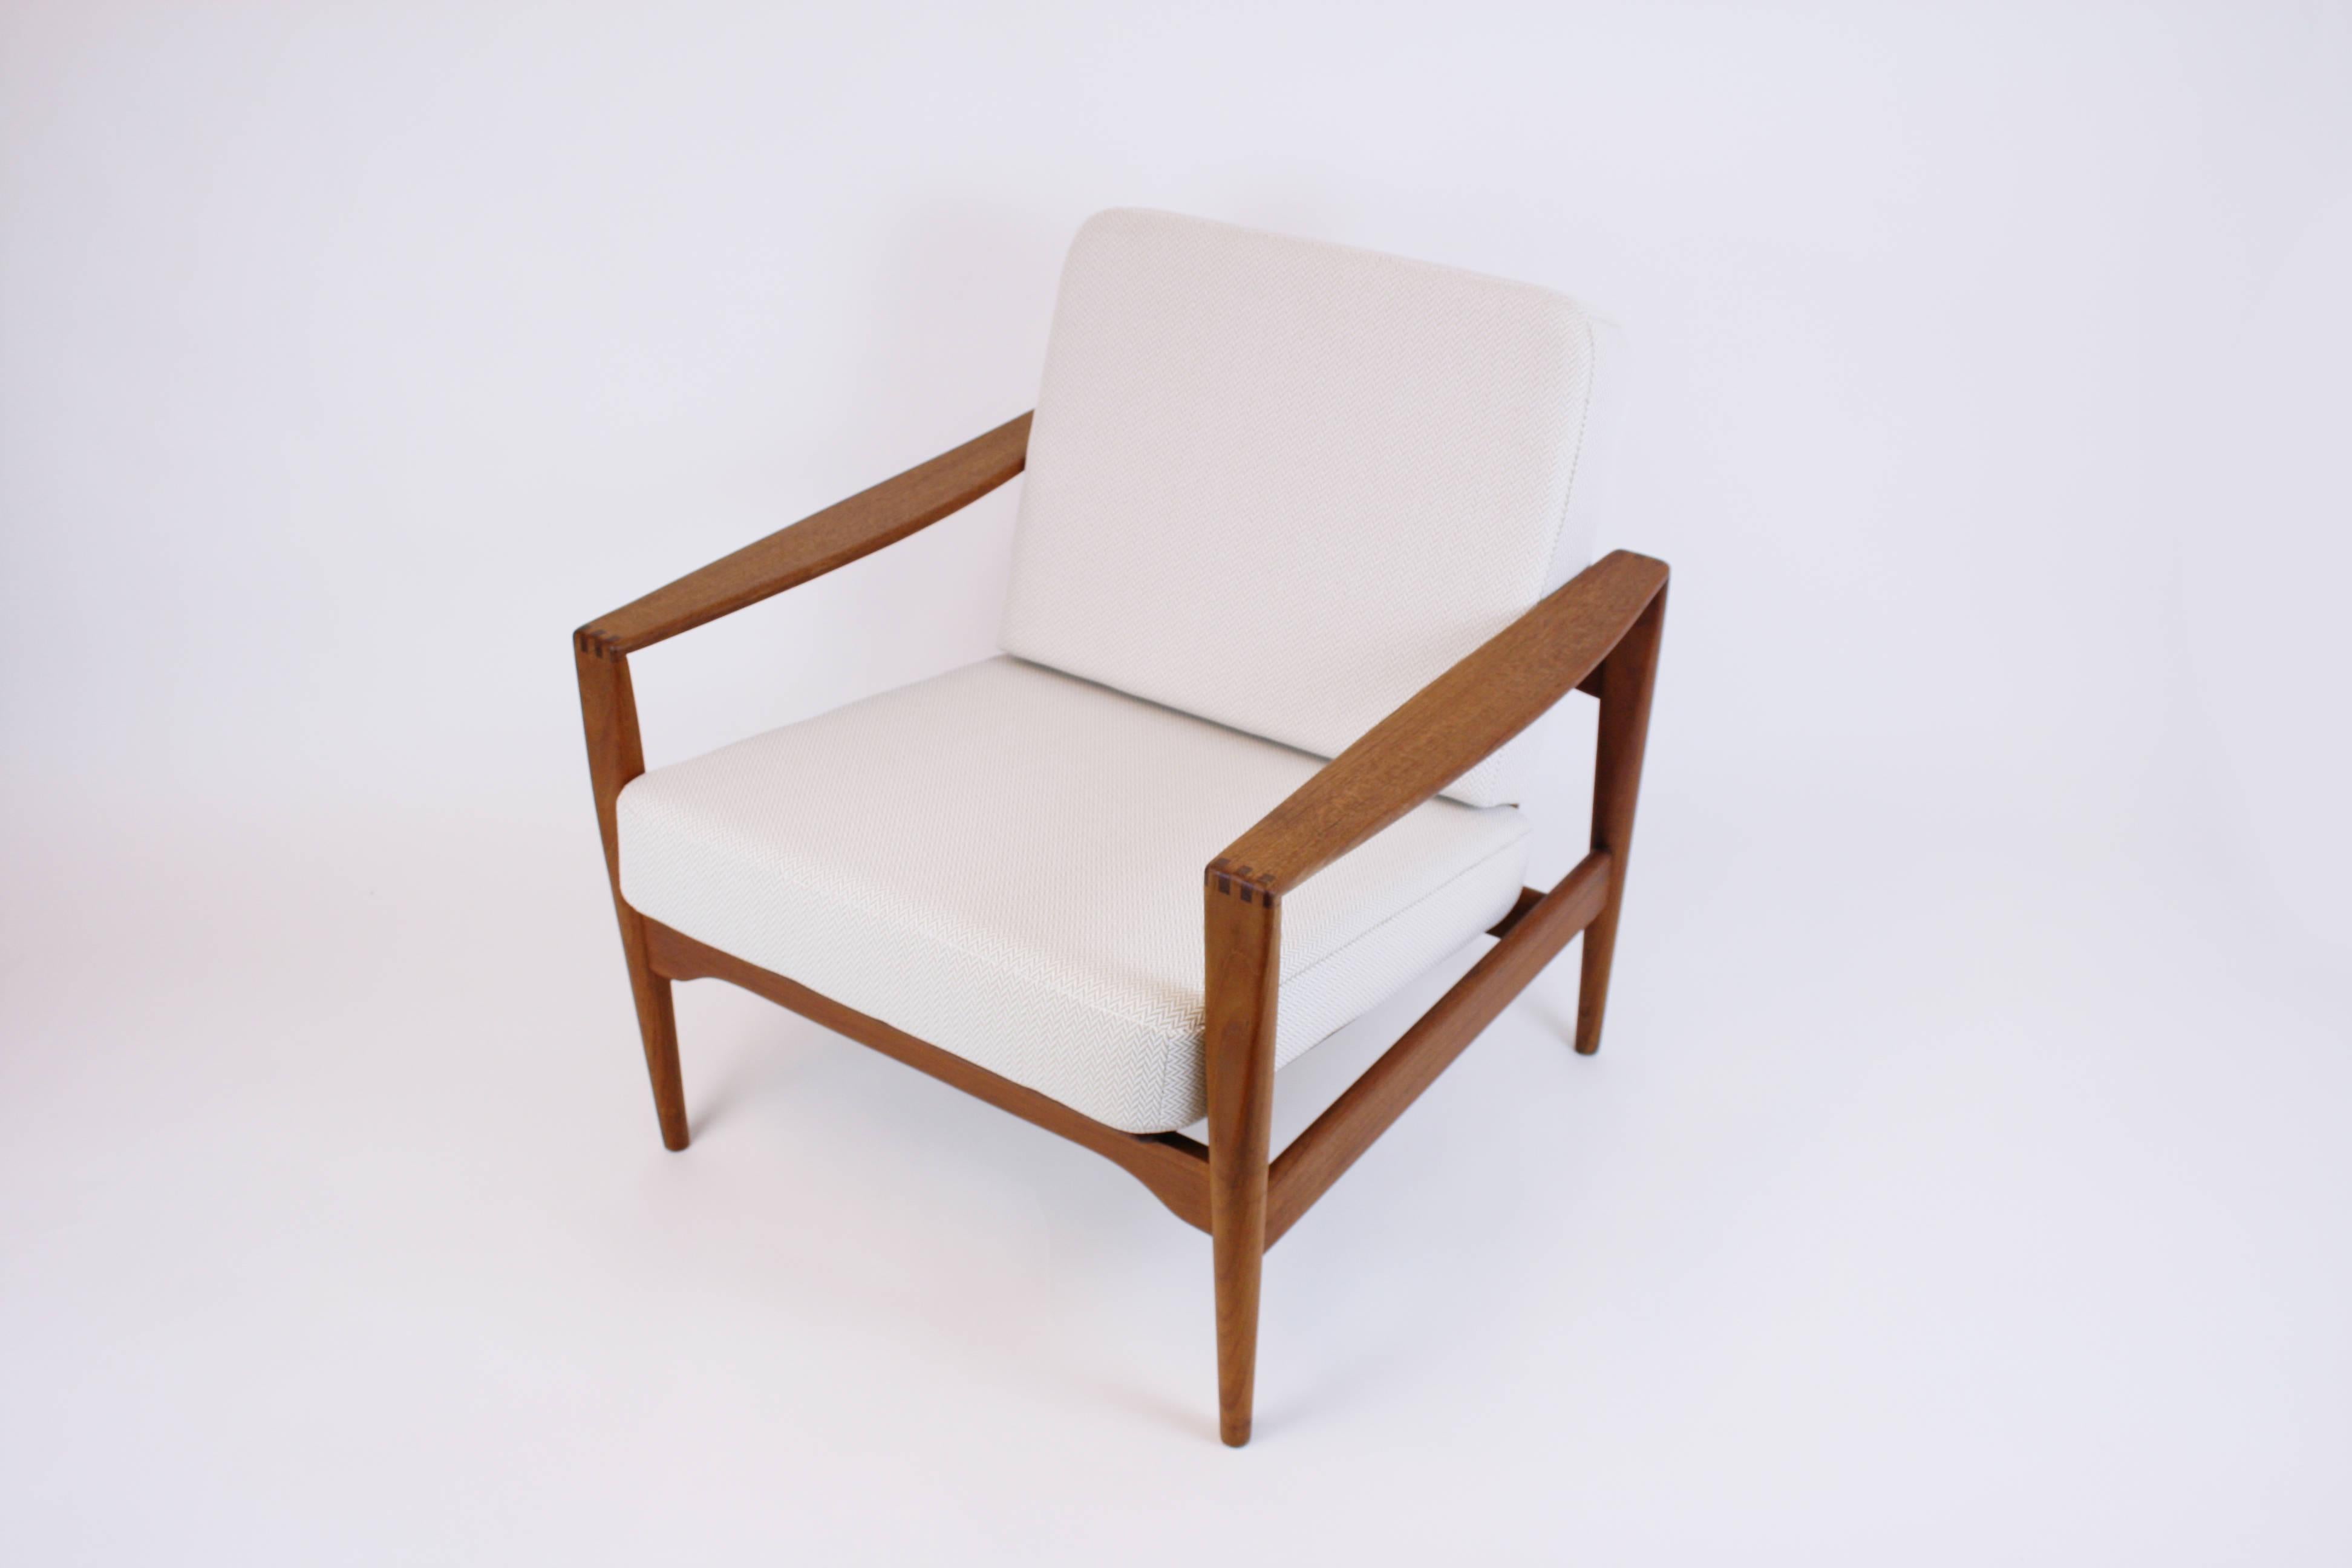 Sessel oder Lounge Chair von Arne Wahl Iversen, hergestellt in Dänemark in den 1960er Jahren. Dieses sehr schöne Objekt bietet ein unverwechselbares und elegantes Aussehen. Seine Polsterbezüge wurden unter Berücksichtigung der authentischen Optik